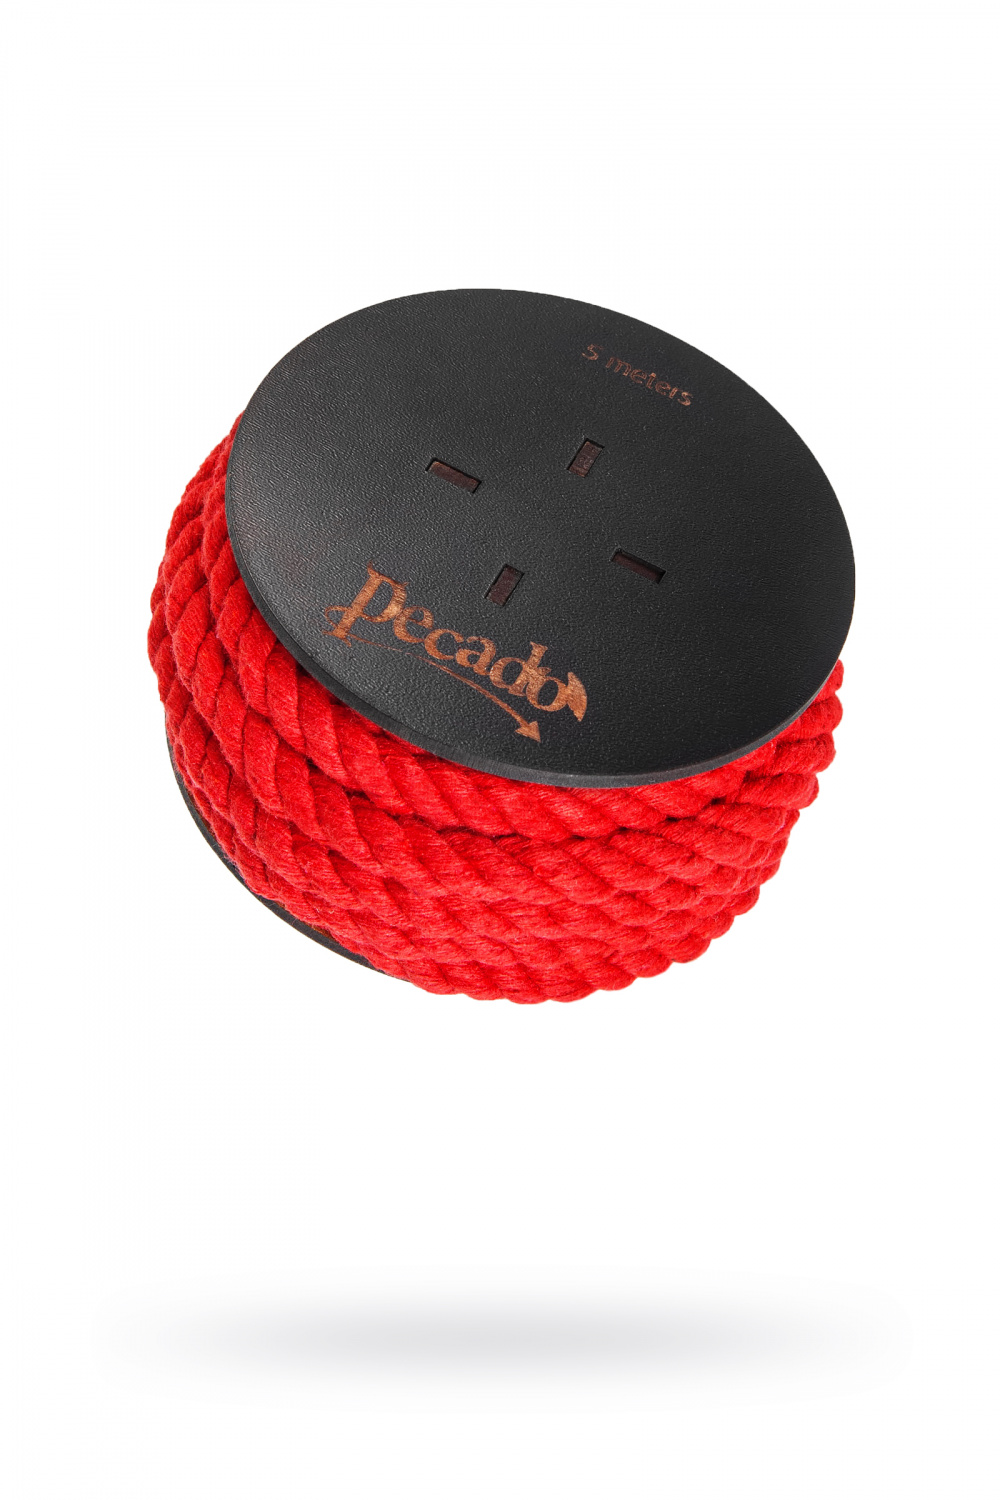 Веревка для шибари Pecado BDSM, на катушке, хлопок, красная, 5 м, Ø 8 мм (арт. 06313)